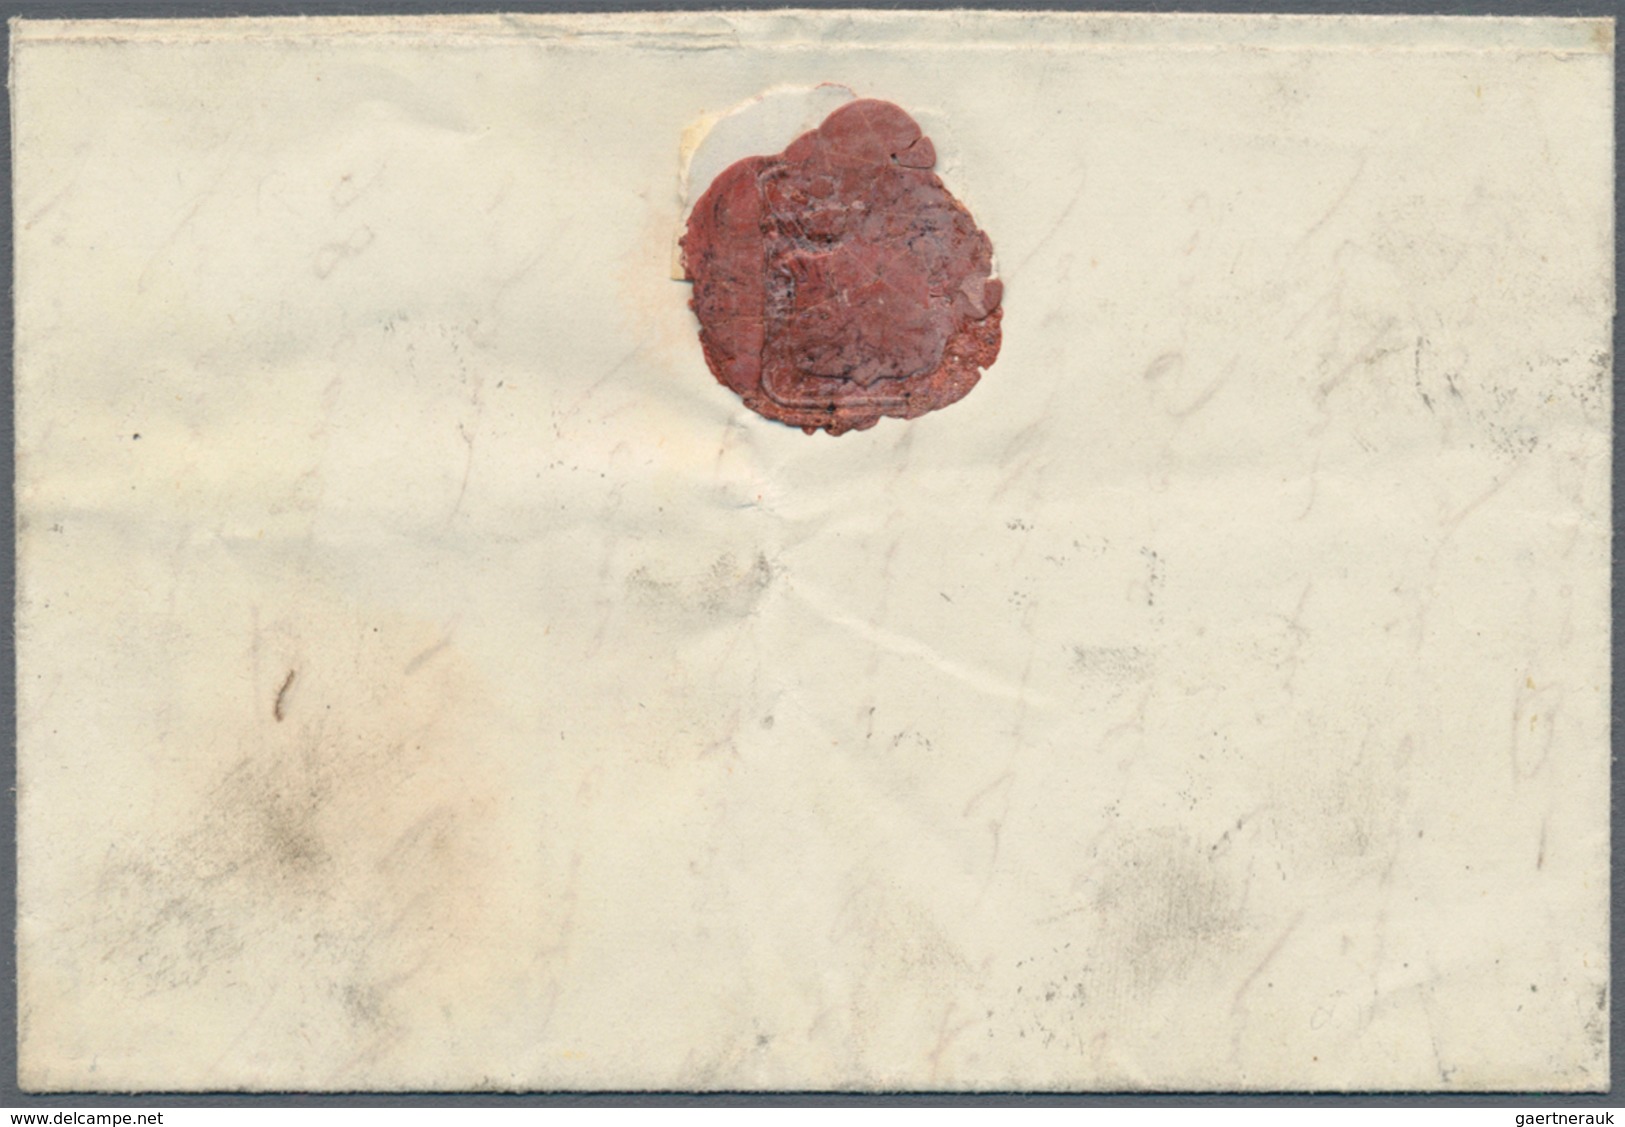 Italien - Altitalienische Staaten: Sizilien: 1859, 1/2 Grano, Second Plate, Orange, Palermo Paper, T - Sicilië